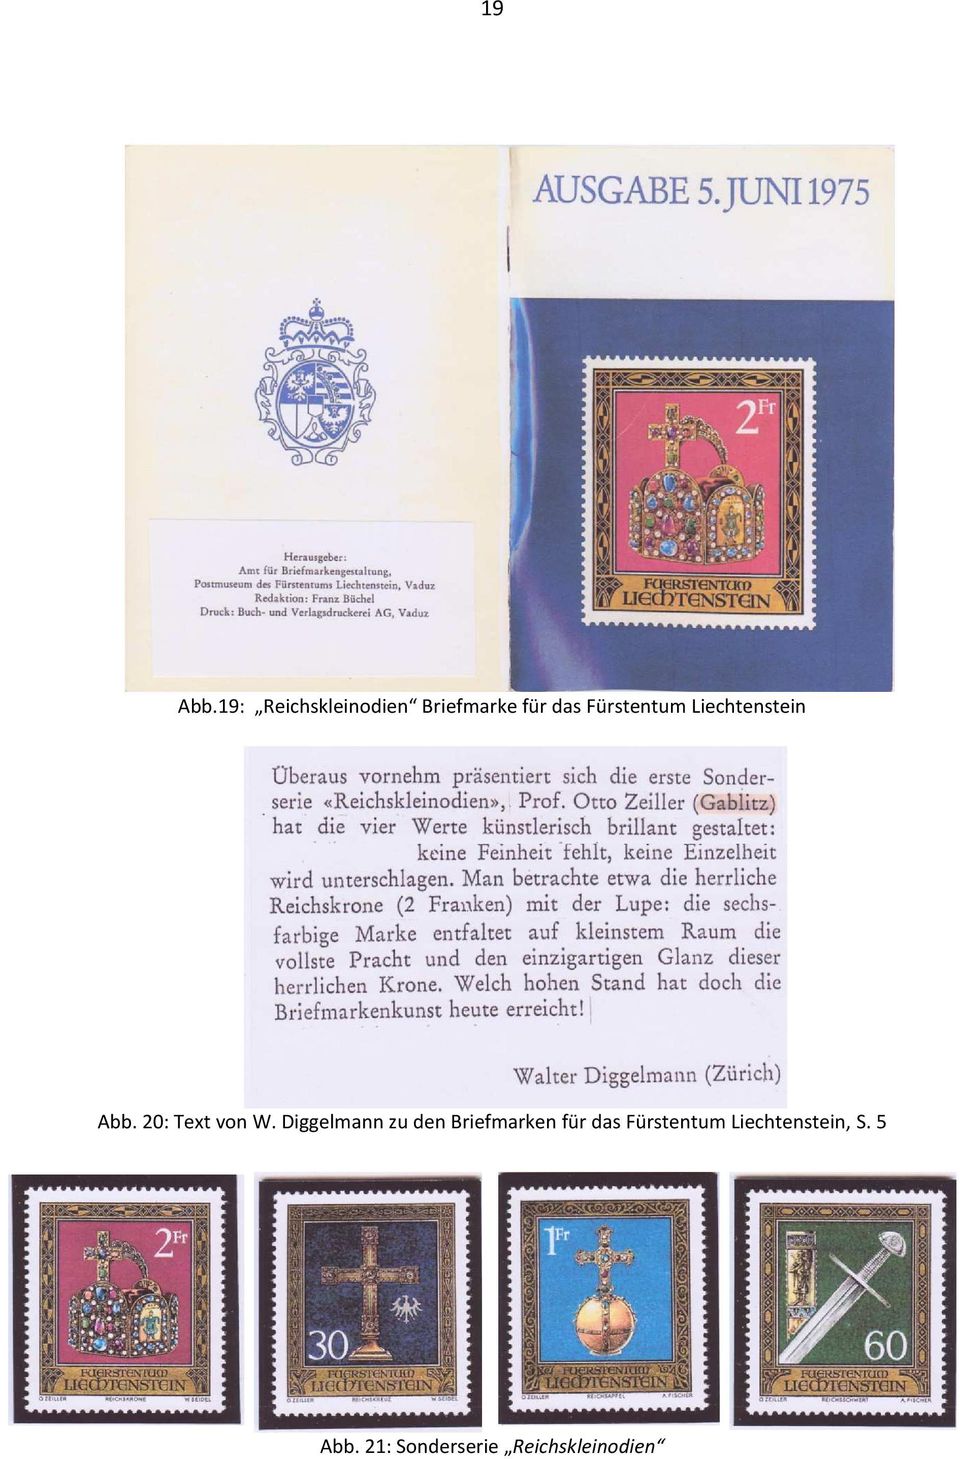 Fürstentum Liechtenstein Abb. 20: Text von W.